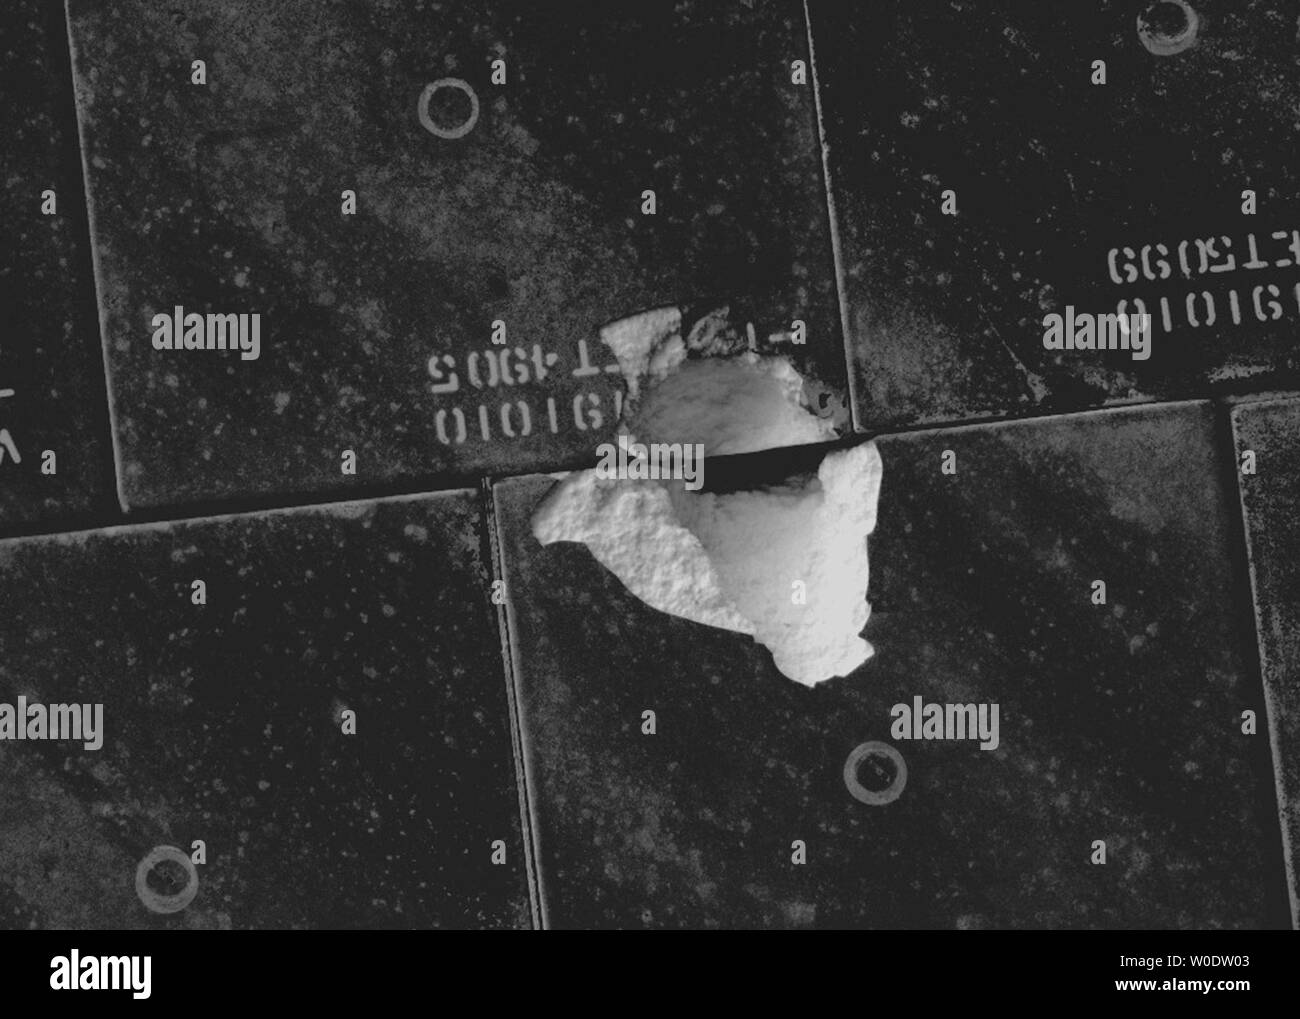 Cette image de la NASA prises par les astronautes à bord de la Station spatiale internationale montre les tuiles endommagées sur le dessous de la navette spatiale Endeavour au cours d'une inspection ciblée de la chaleur de la navette le 12 août 2007. Après des études de terrain, gestionnaires de la mission s'efforcera de débris suspects hors du réservoir extérieur et une minute après le décollage le mercredi et a frappé des tuiles sur le dessous de la navette, près de la porte d'atterrissage principal droit. La gouge est de 3 1/2 pouces de long. (Photo d'UPI/NASA) Banque D'Images